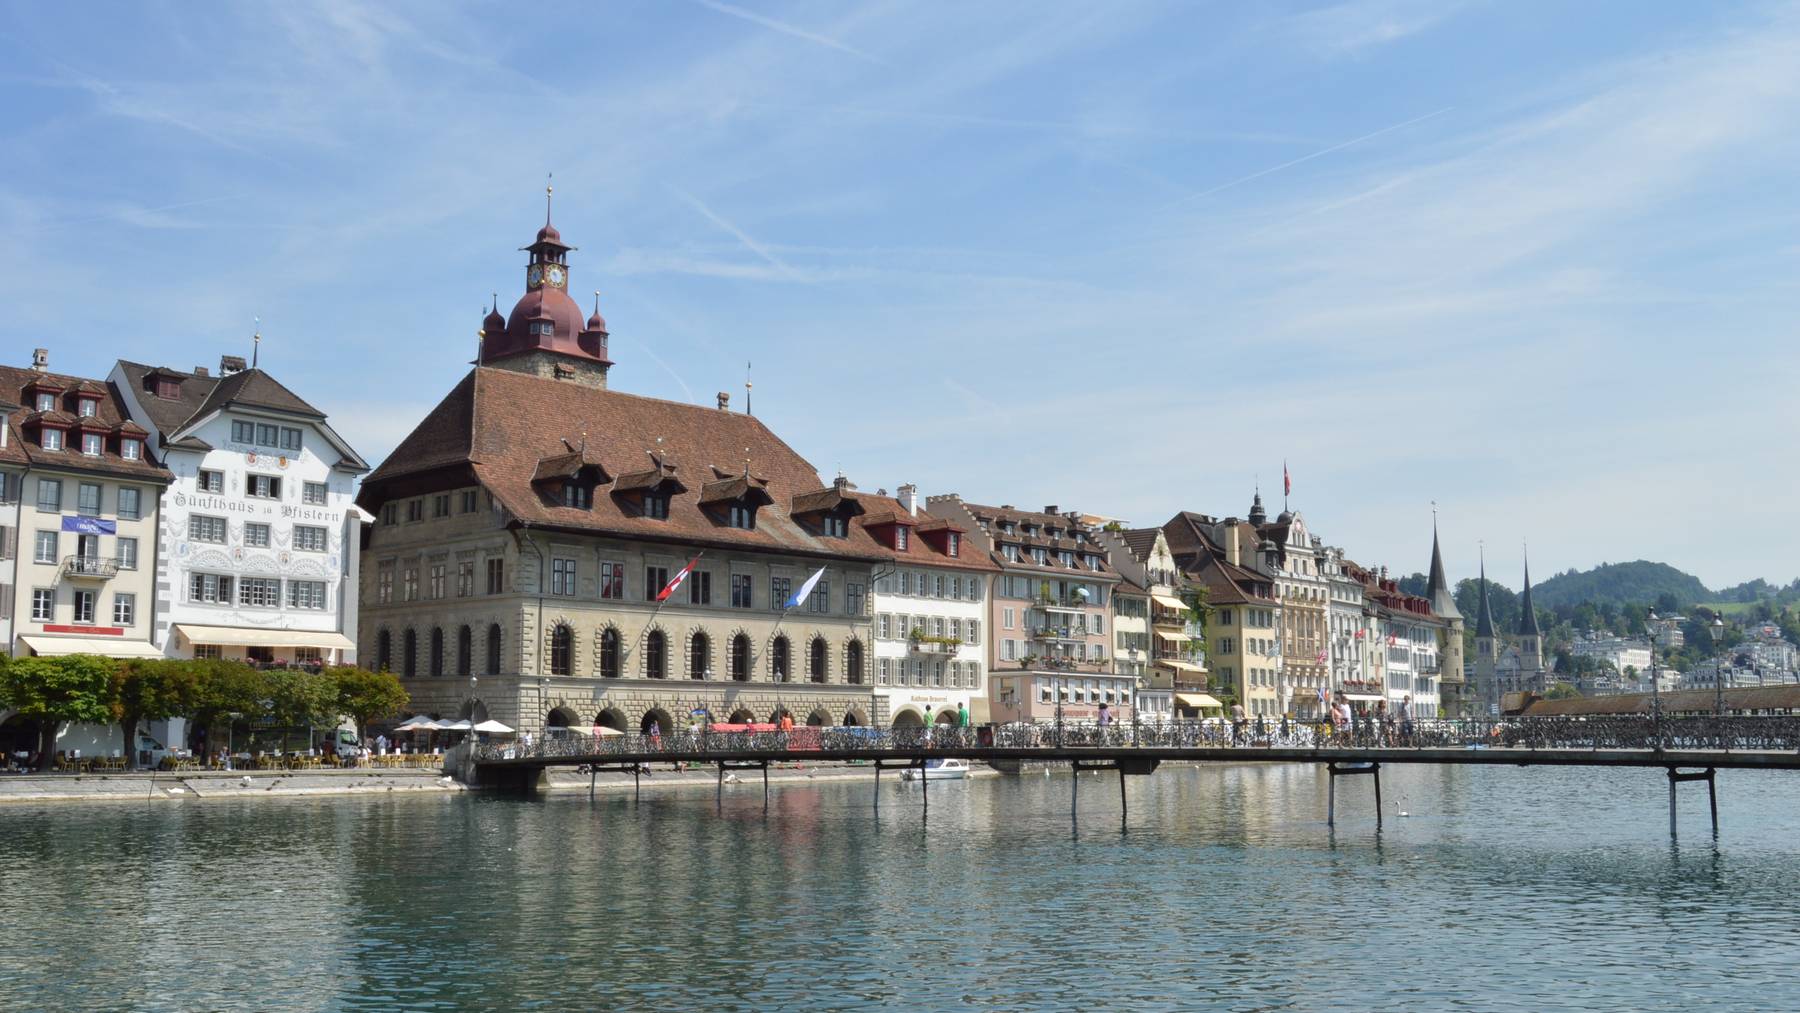 Öffentlichkeitsprinzip in der Stadt Luzern